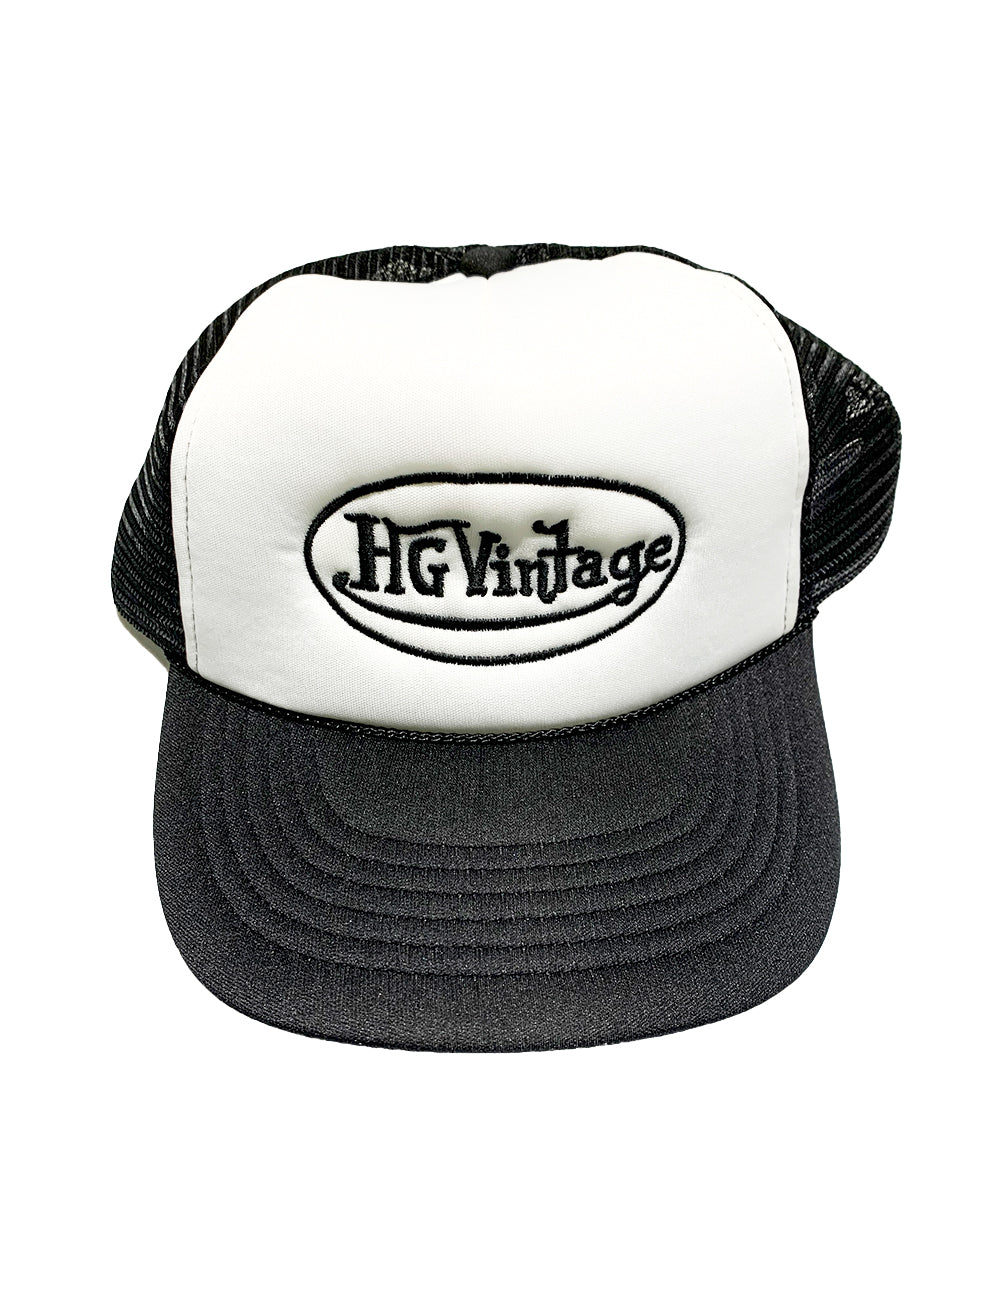 HG Vintage Black Dutch Trucker Hat